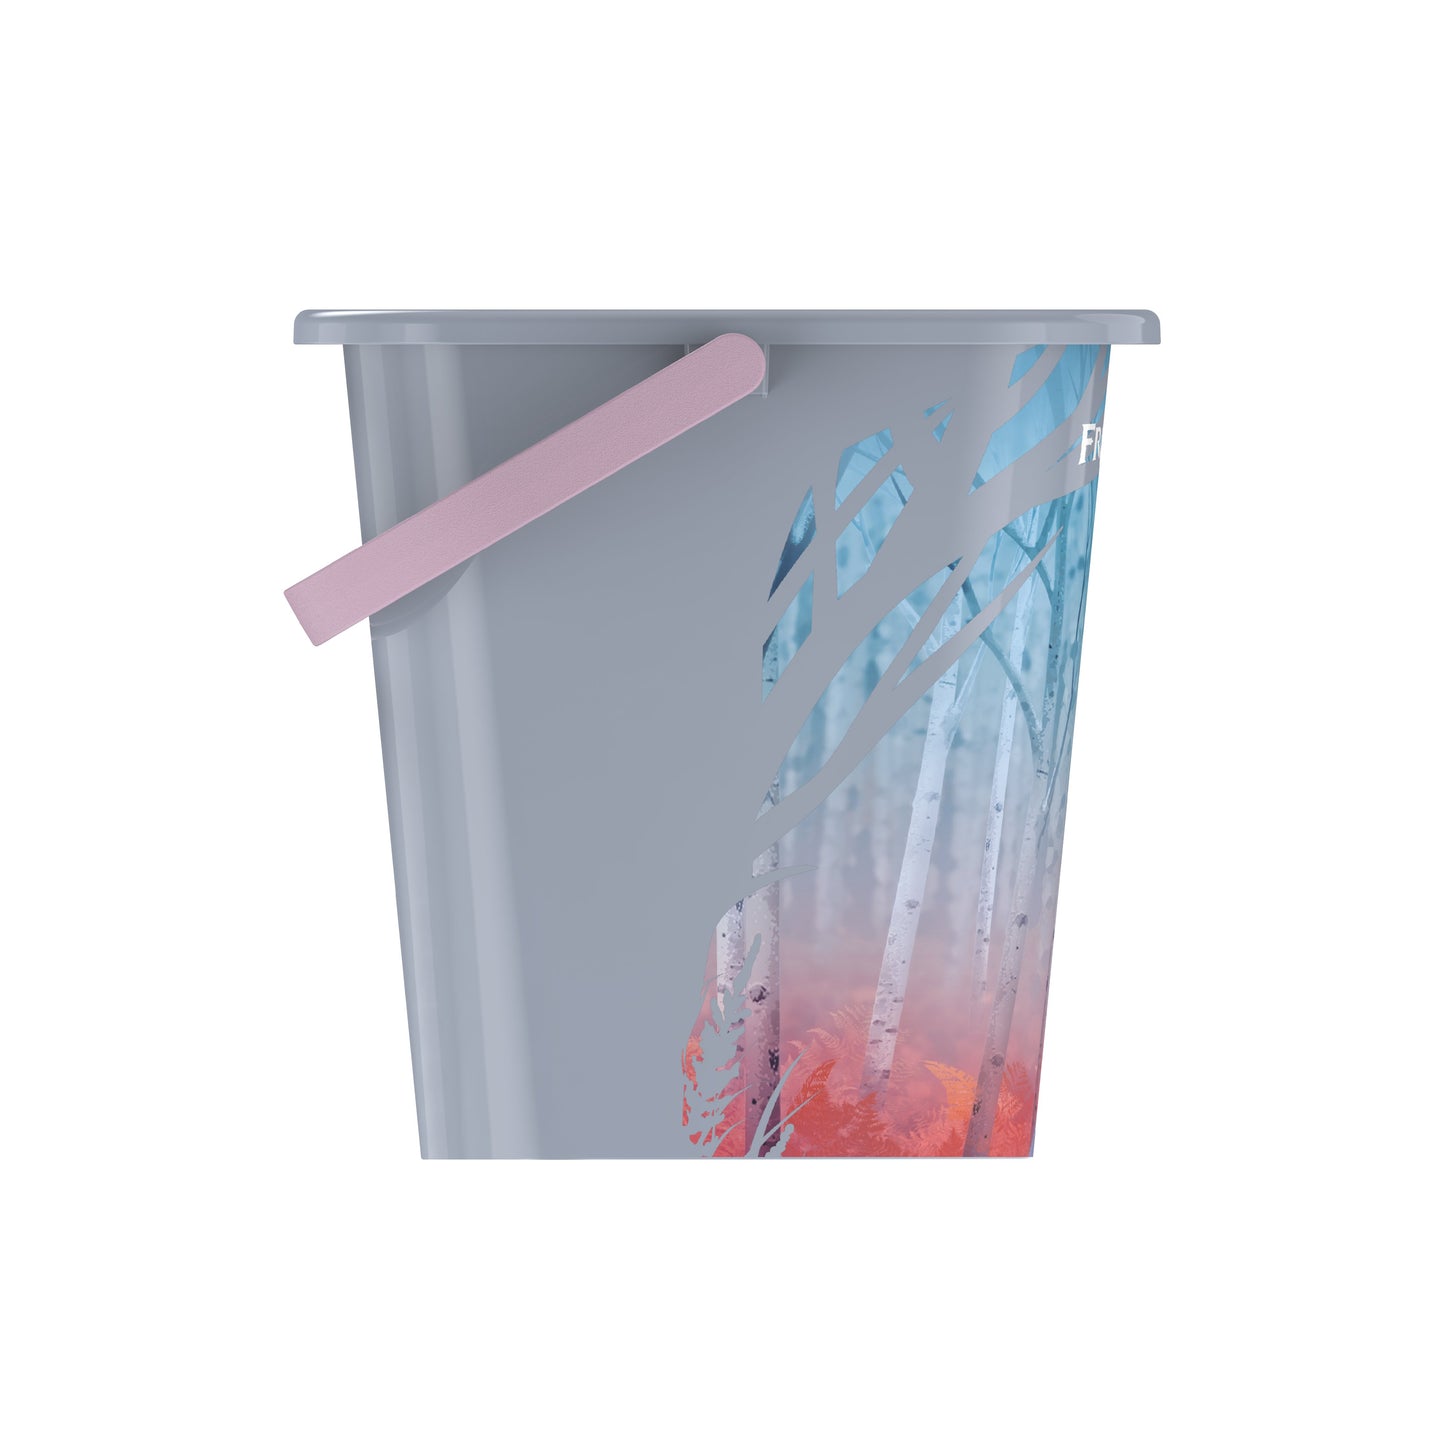 Cosmoplast Disney Frozen Sand Bucket 3 Liters with Handle